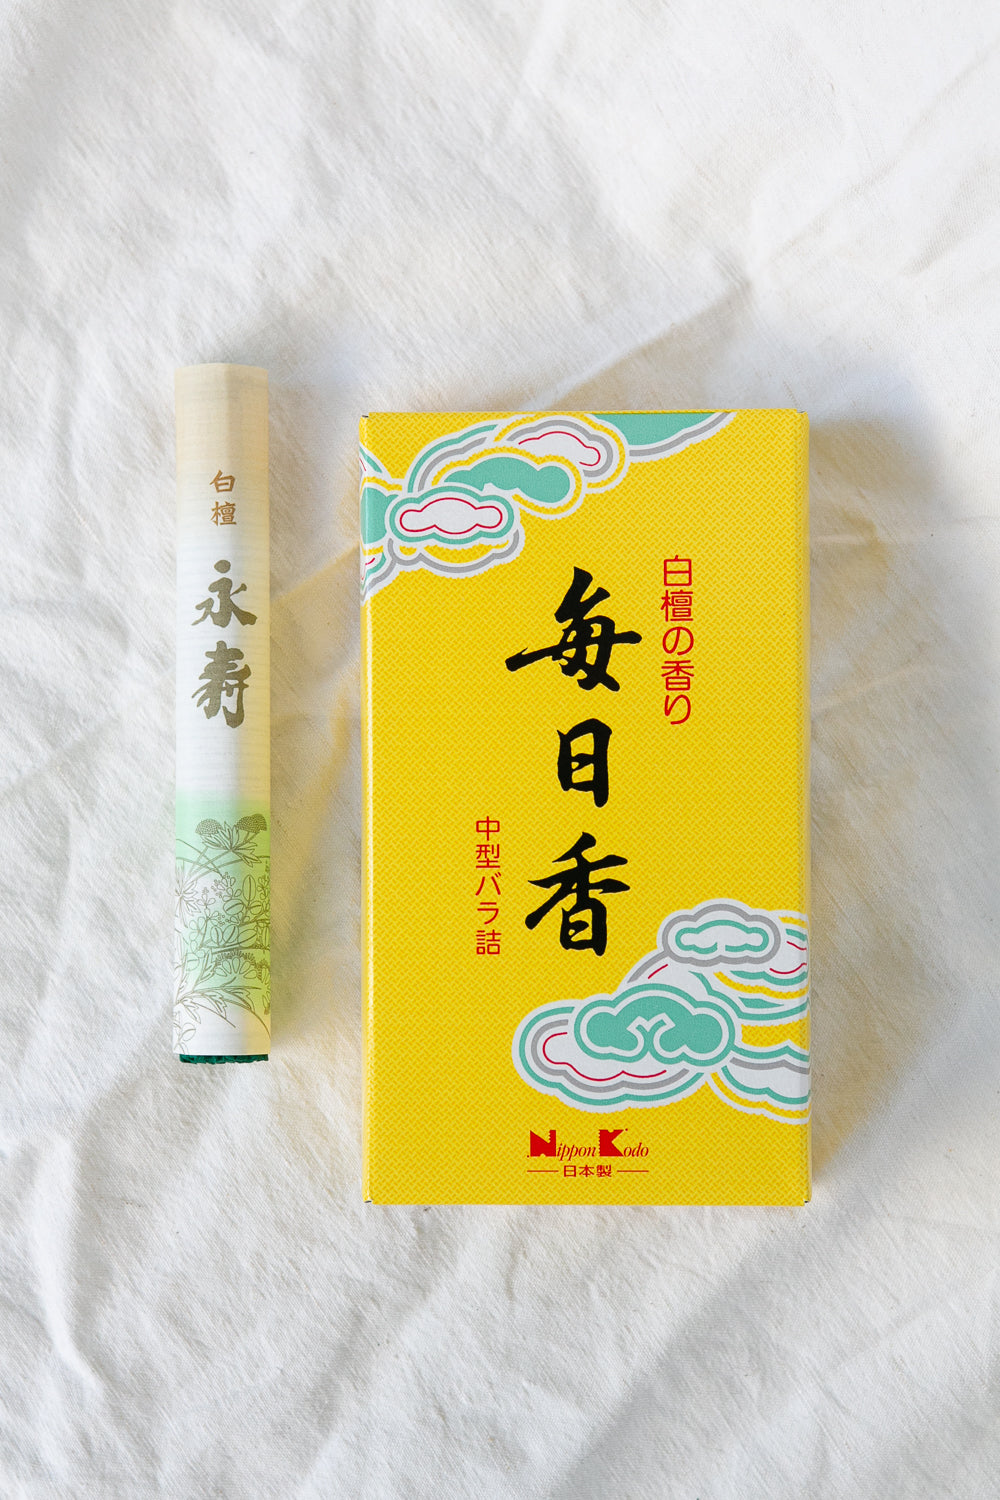 Mainichi-Koh Sandalwood Incense